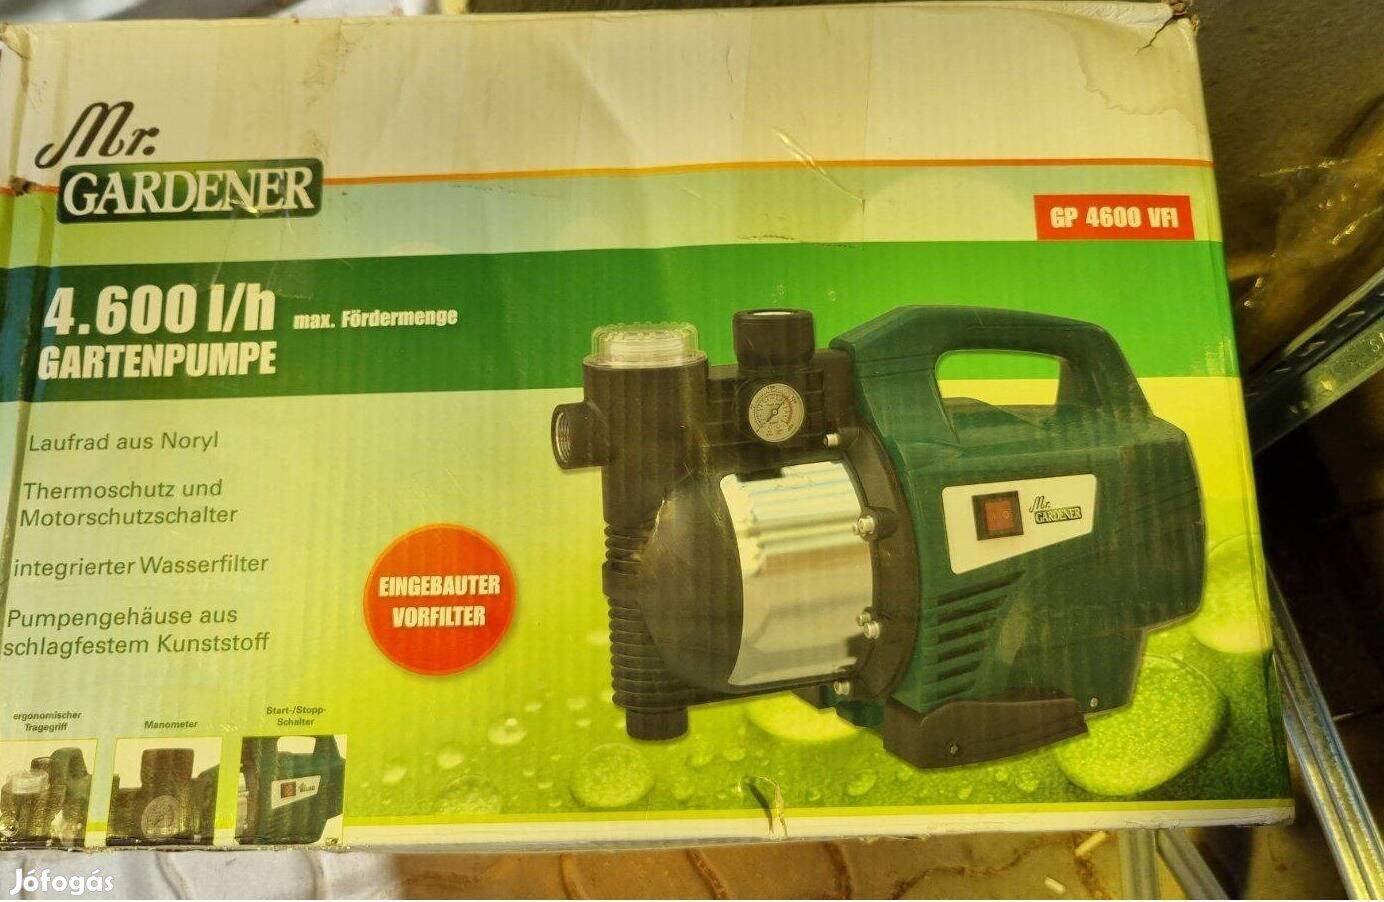 Mr. Gardener erős kerti szivattyú 1100W-os motorral, 4600L/h vízhozam